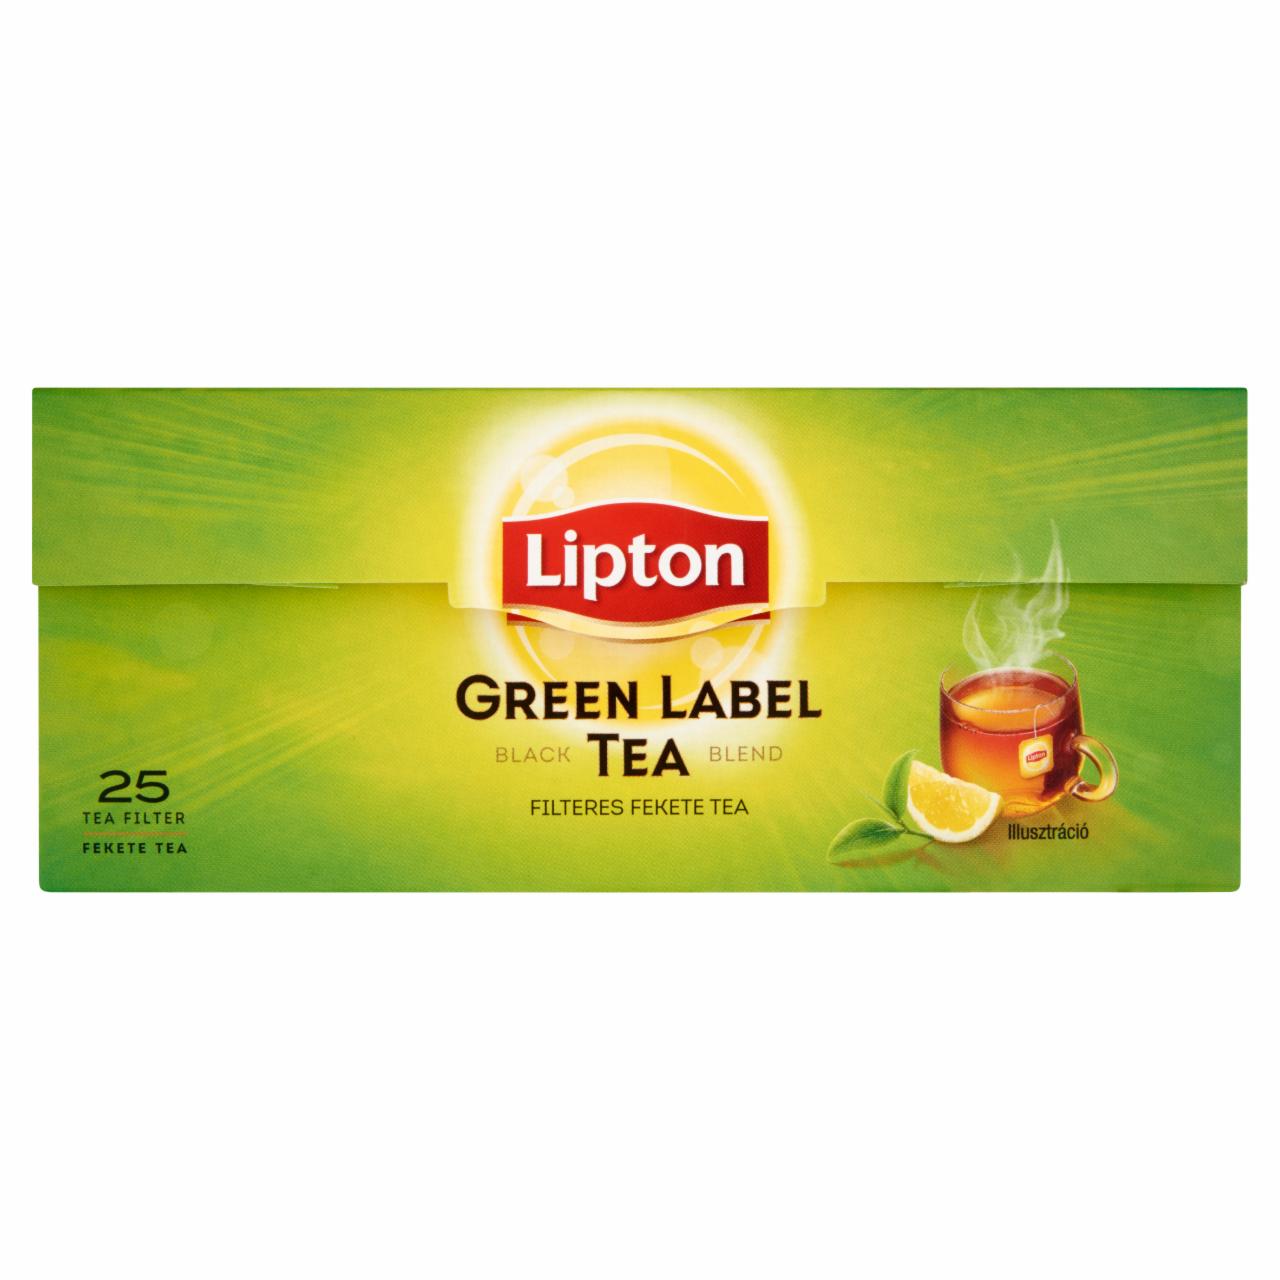 Képek - Green Label fekete tea Lipton